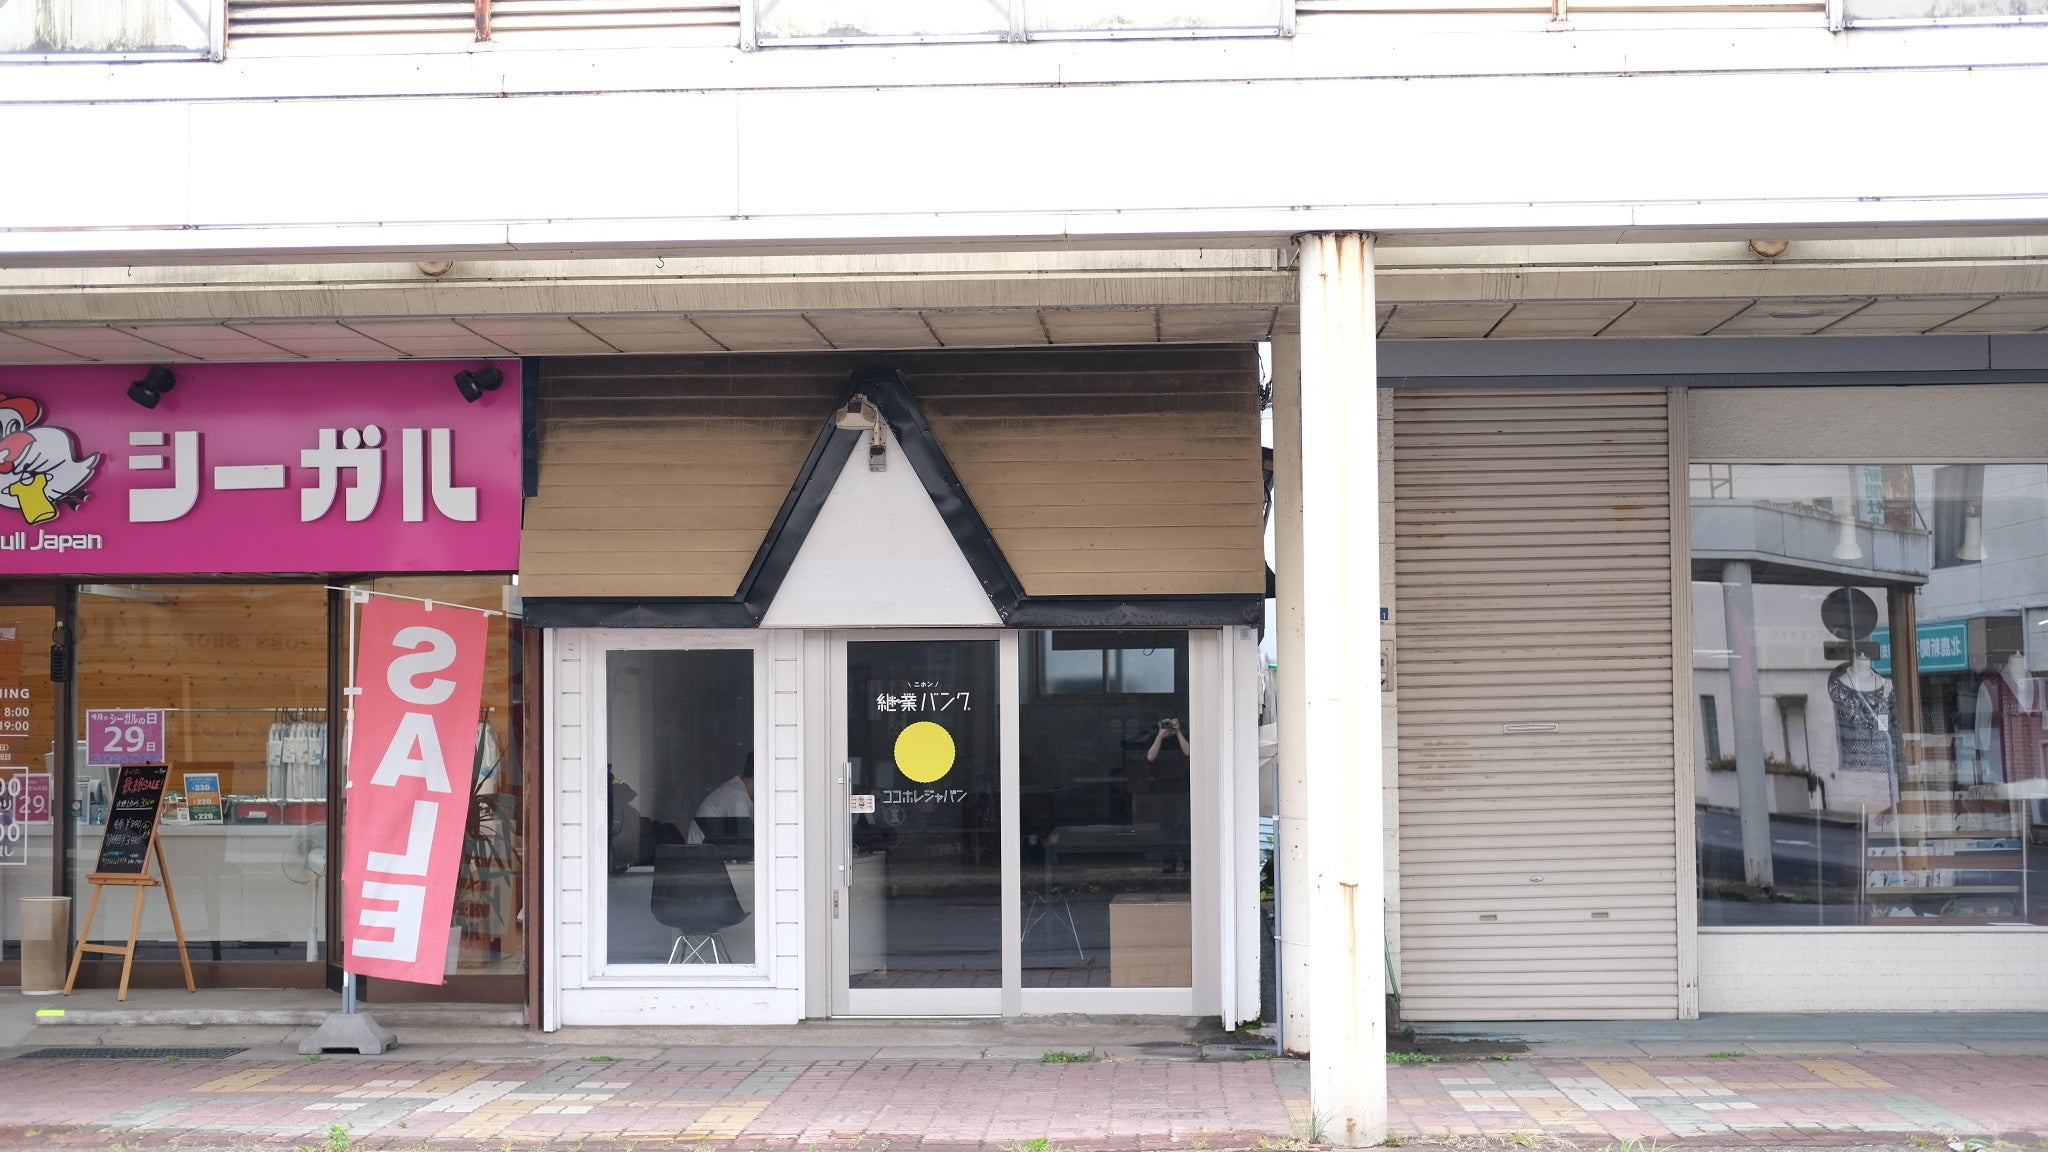 鷹ノ巣駅前の商店街の一画に秋田継業サポートセンターを開所